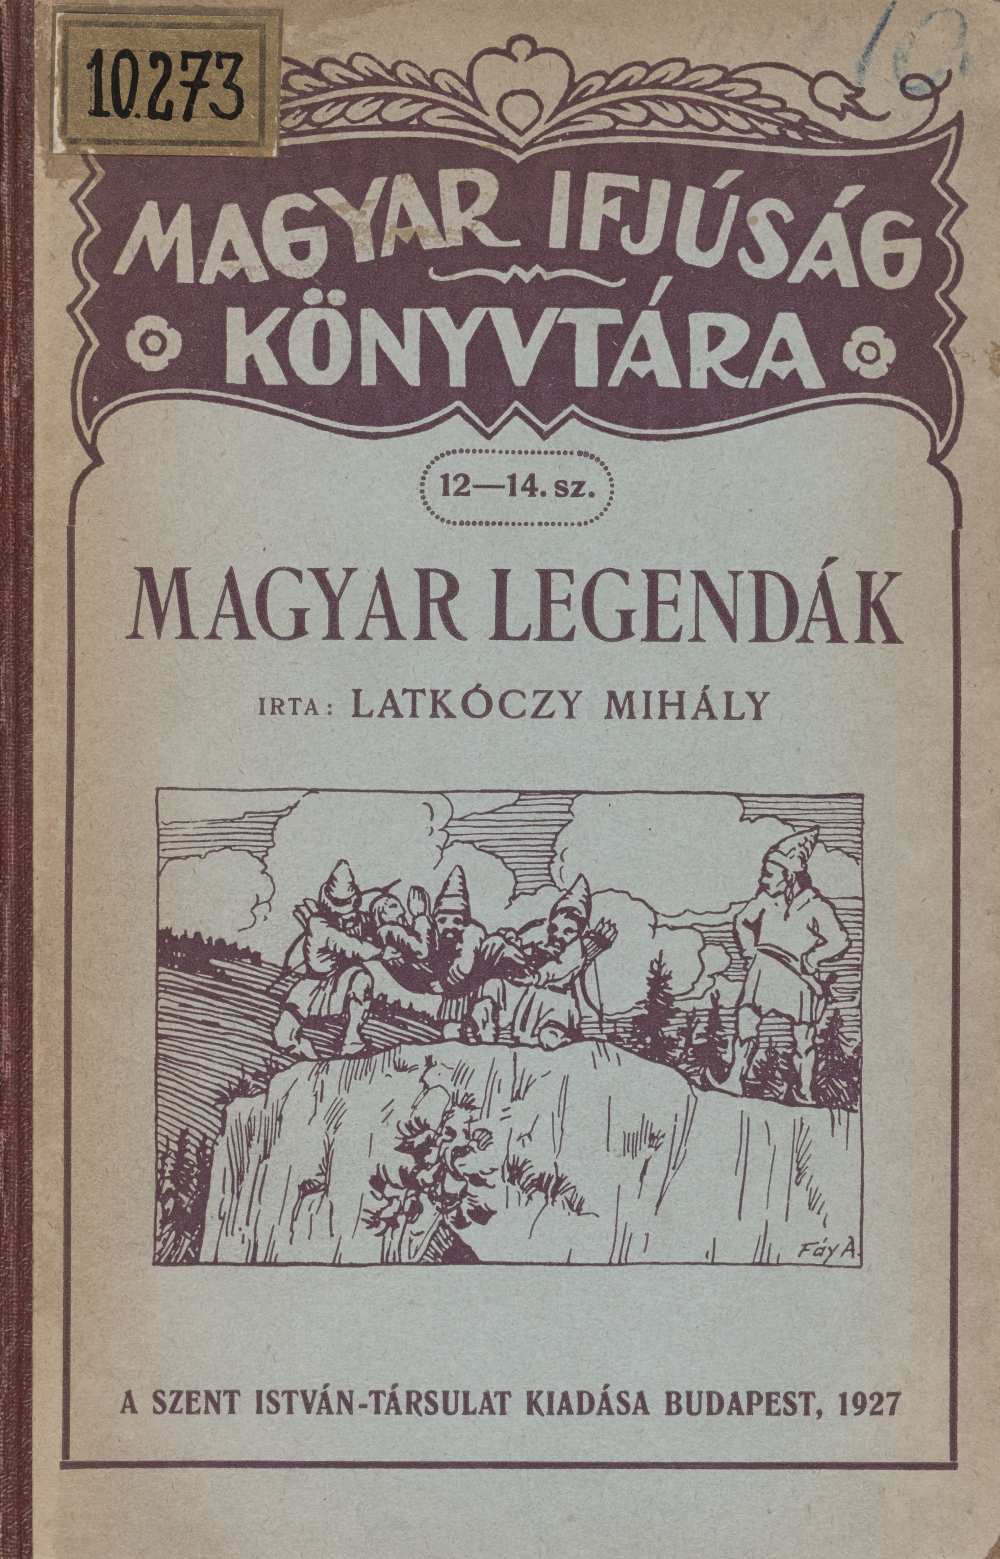 Latkóczy Mihály: Magyar legendák, Budapest, Szent István Társulat (Magyar Ifjúság Könyvtára 12‒14.), 1926. – Törzsgyűjtemény https://nektar.oszk.hu/hu/manifestation/3306055